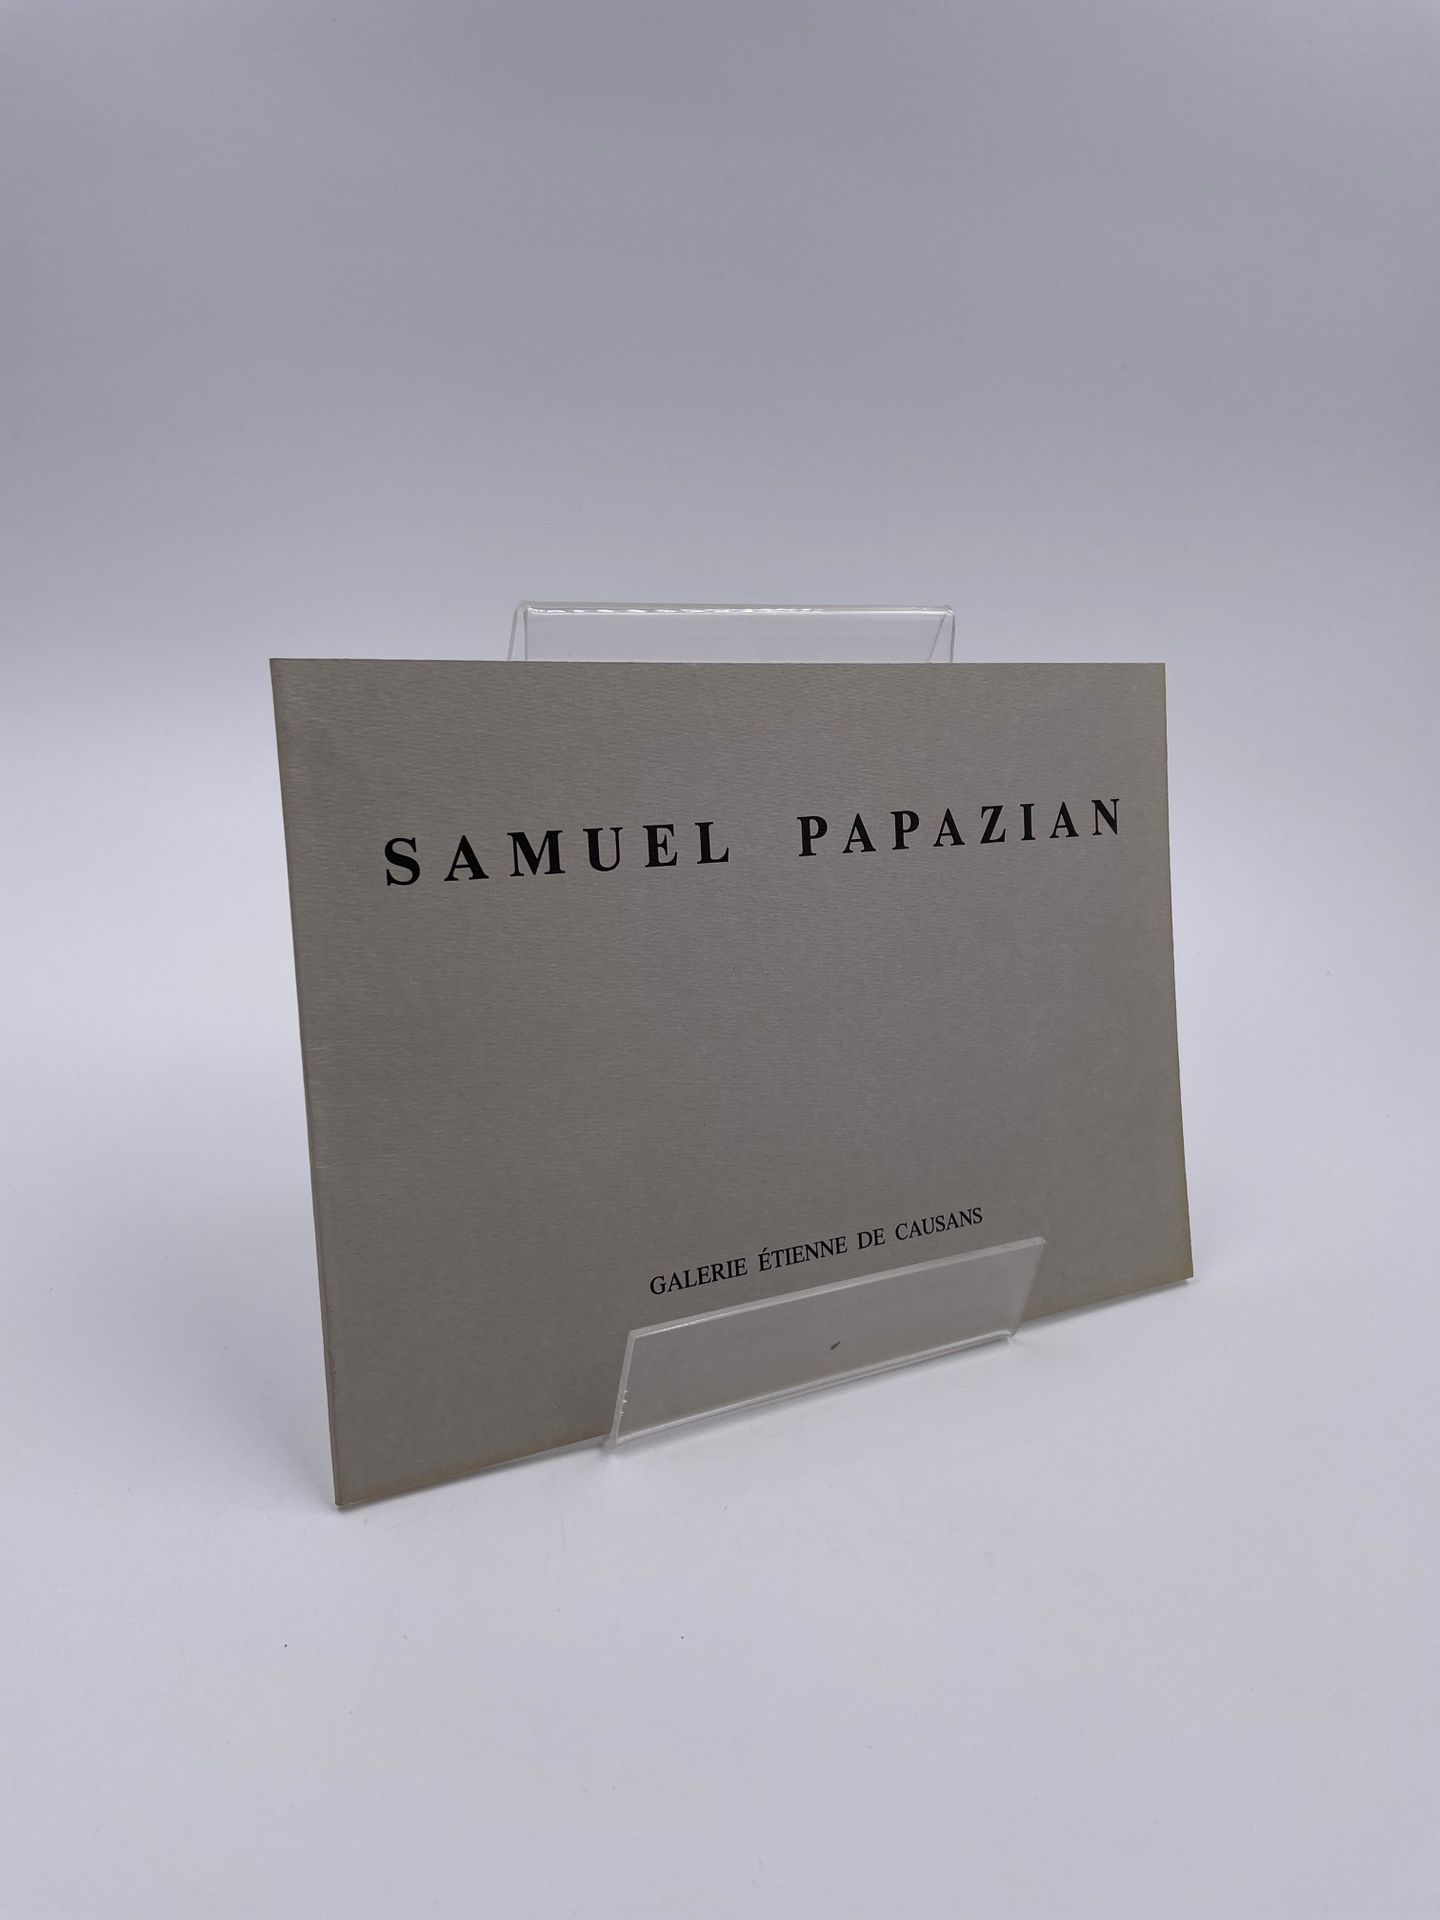 Null 1卷："Samuel Papazian Peintures"，Étienne de Causans画廊，巴黎，1991年4月

"在17 rue Be&hellip;